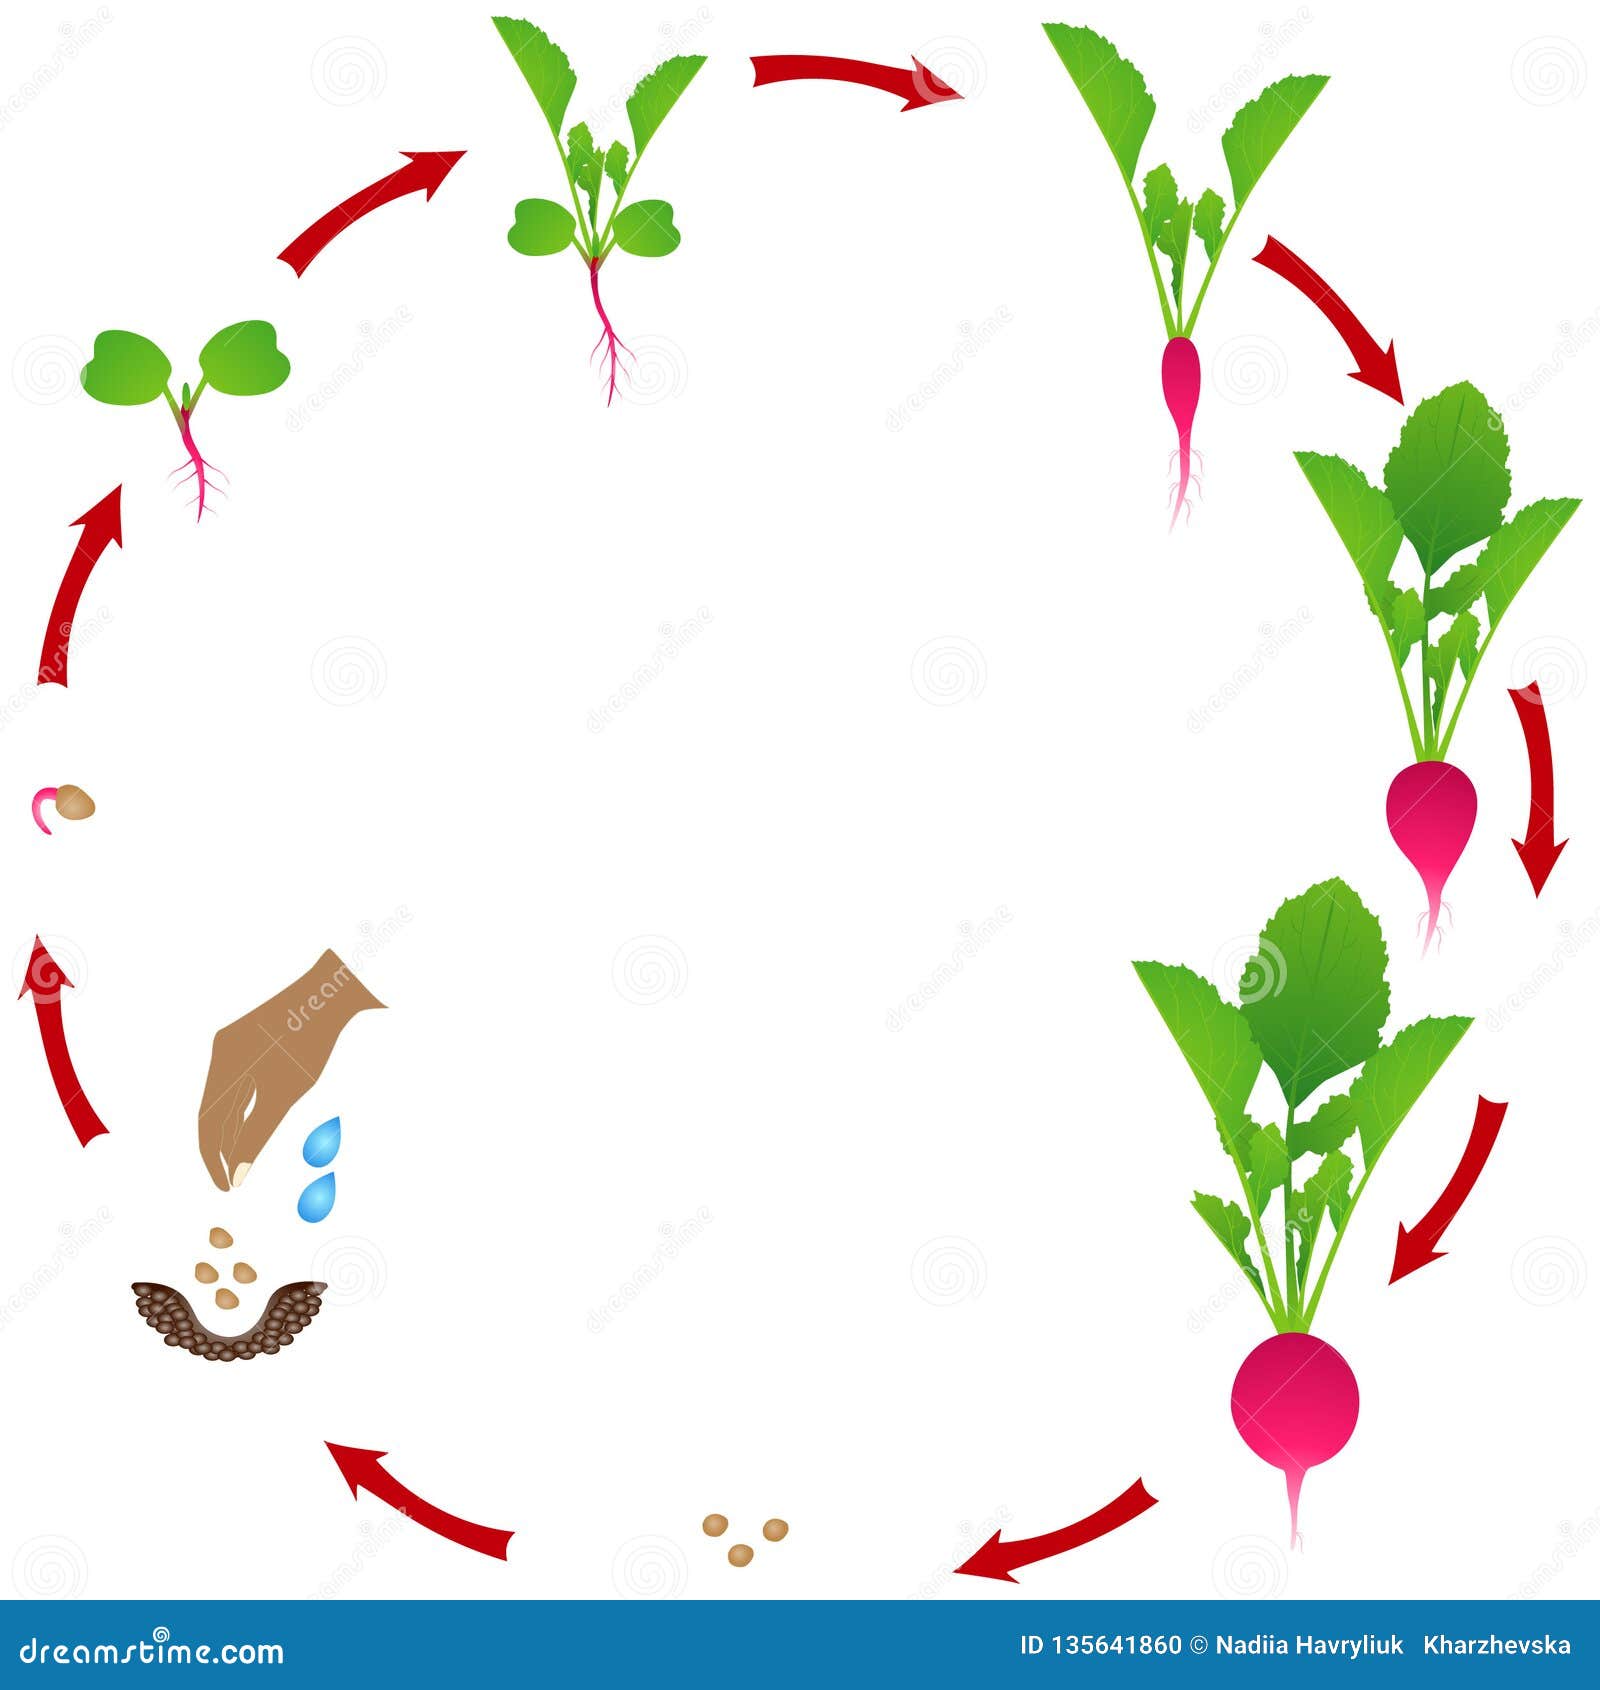 Жизненный цикл овощных растений по маркову. Стадии развития редиски. Цикл роста редиса. Жизненный цикл редиса. Схема роста редиса.